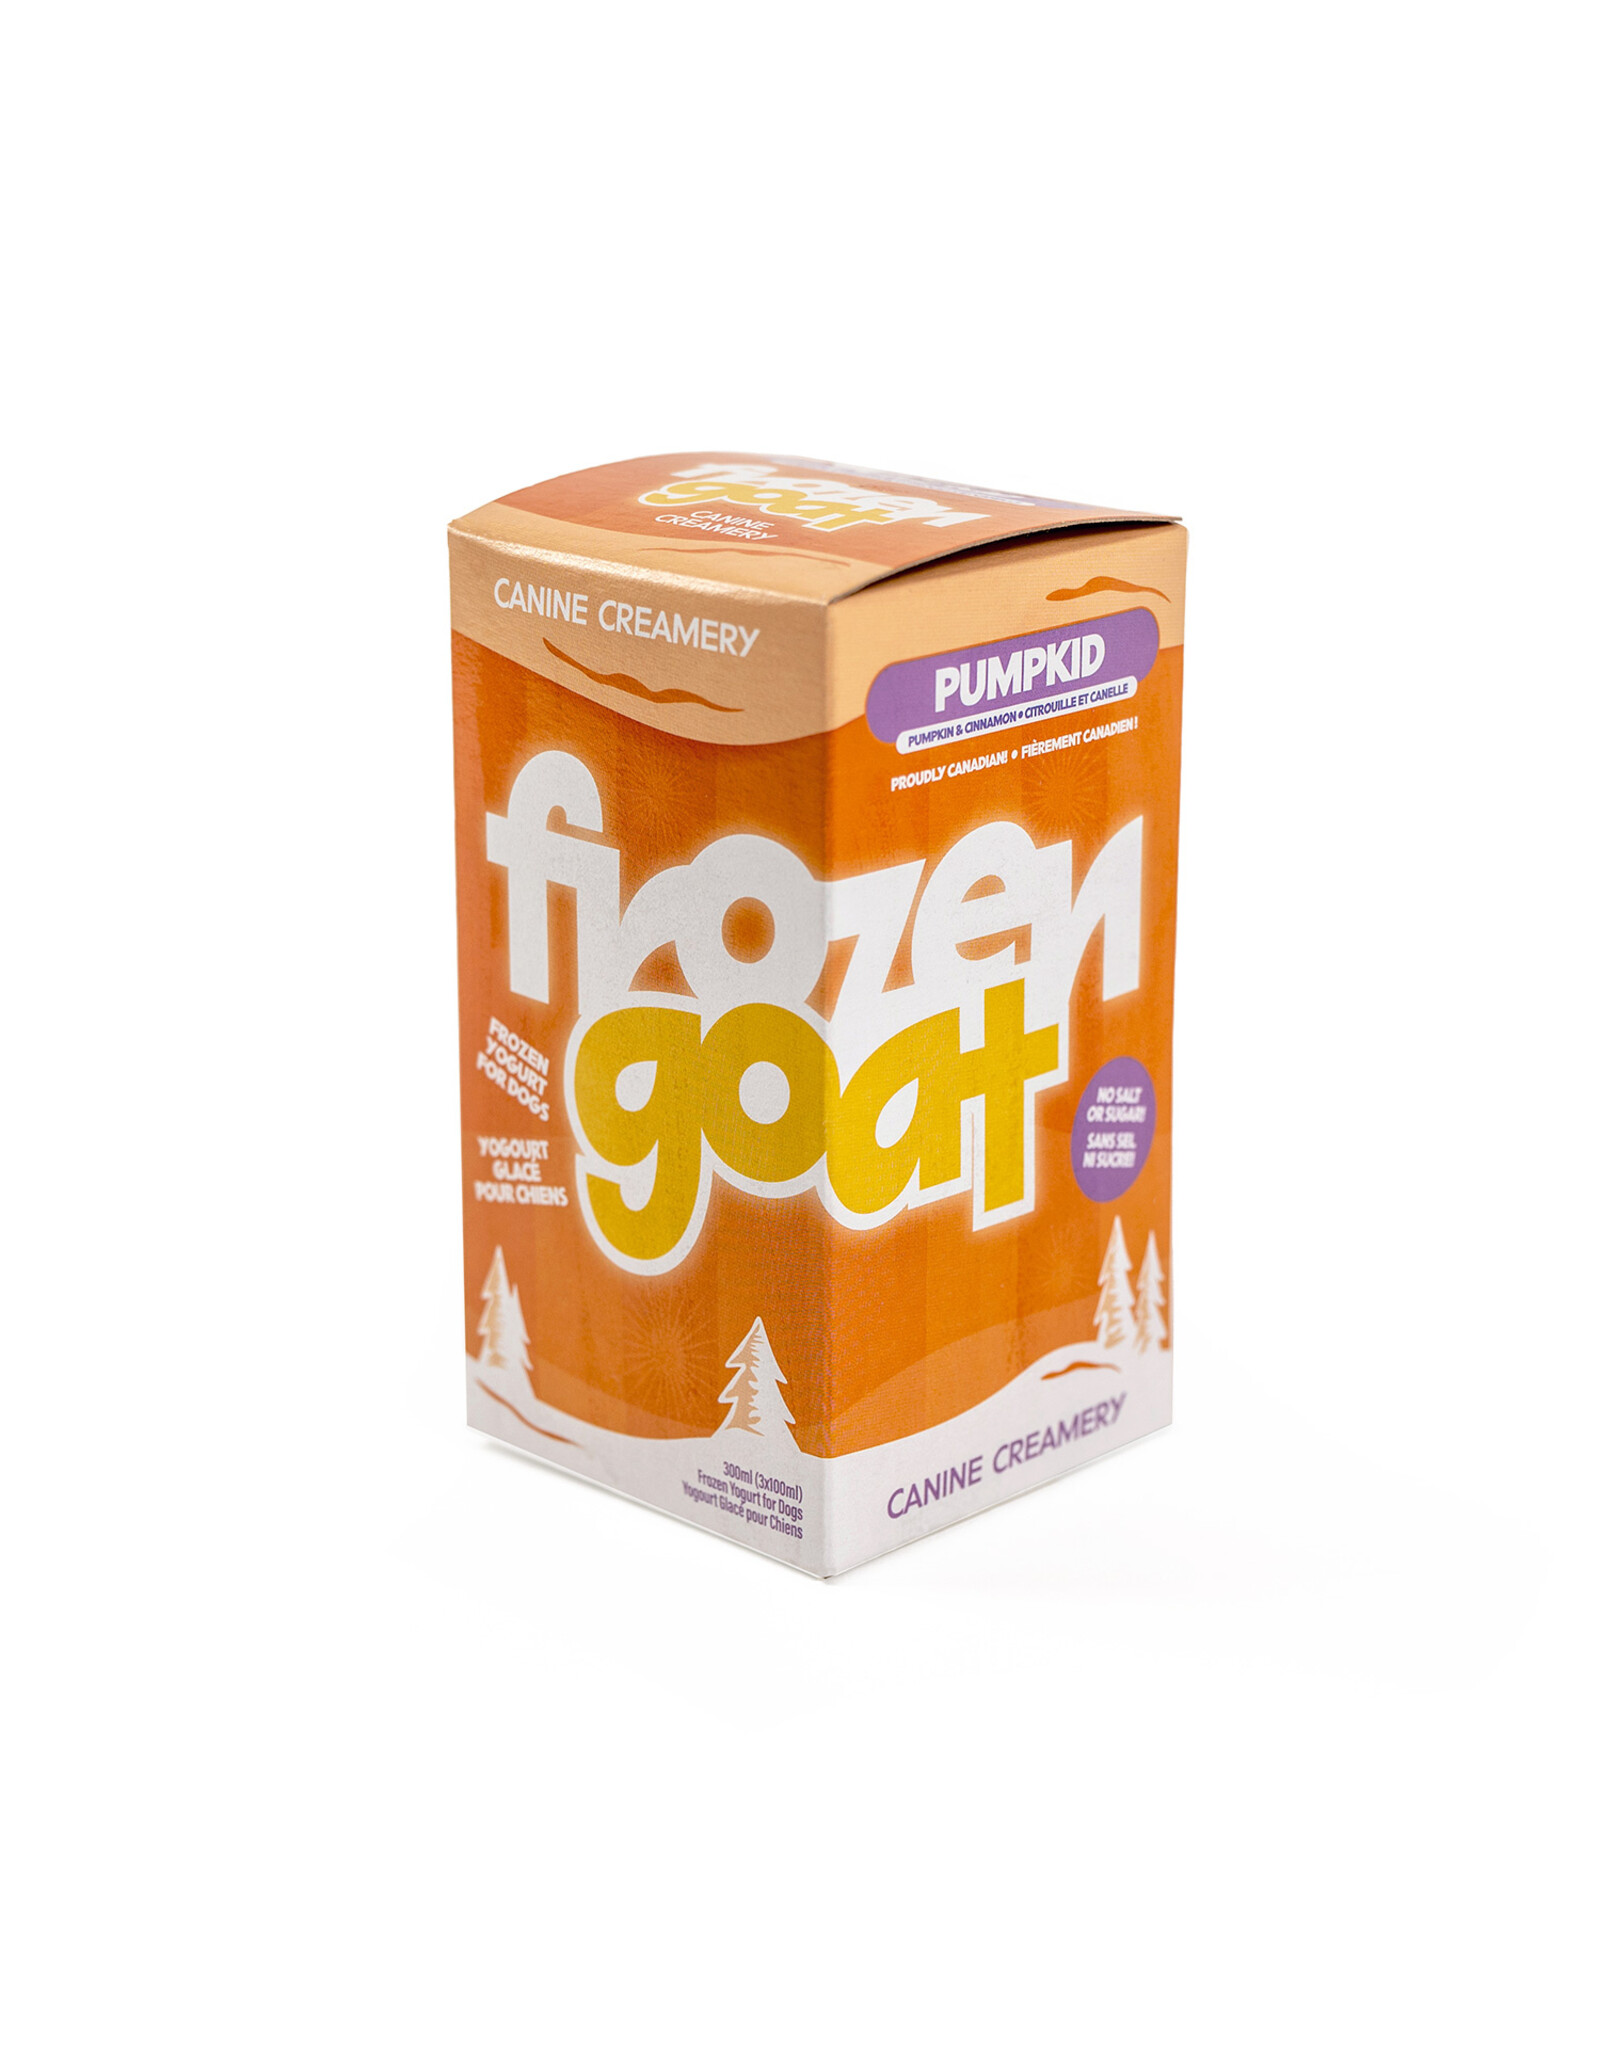 Frozen Goat Pumpkid – 300ml